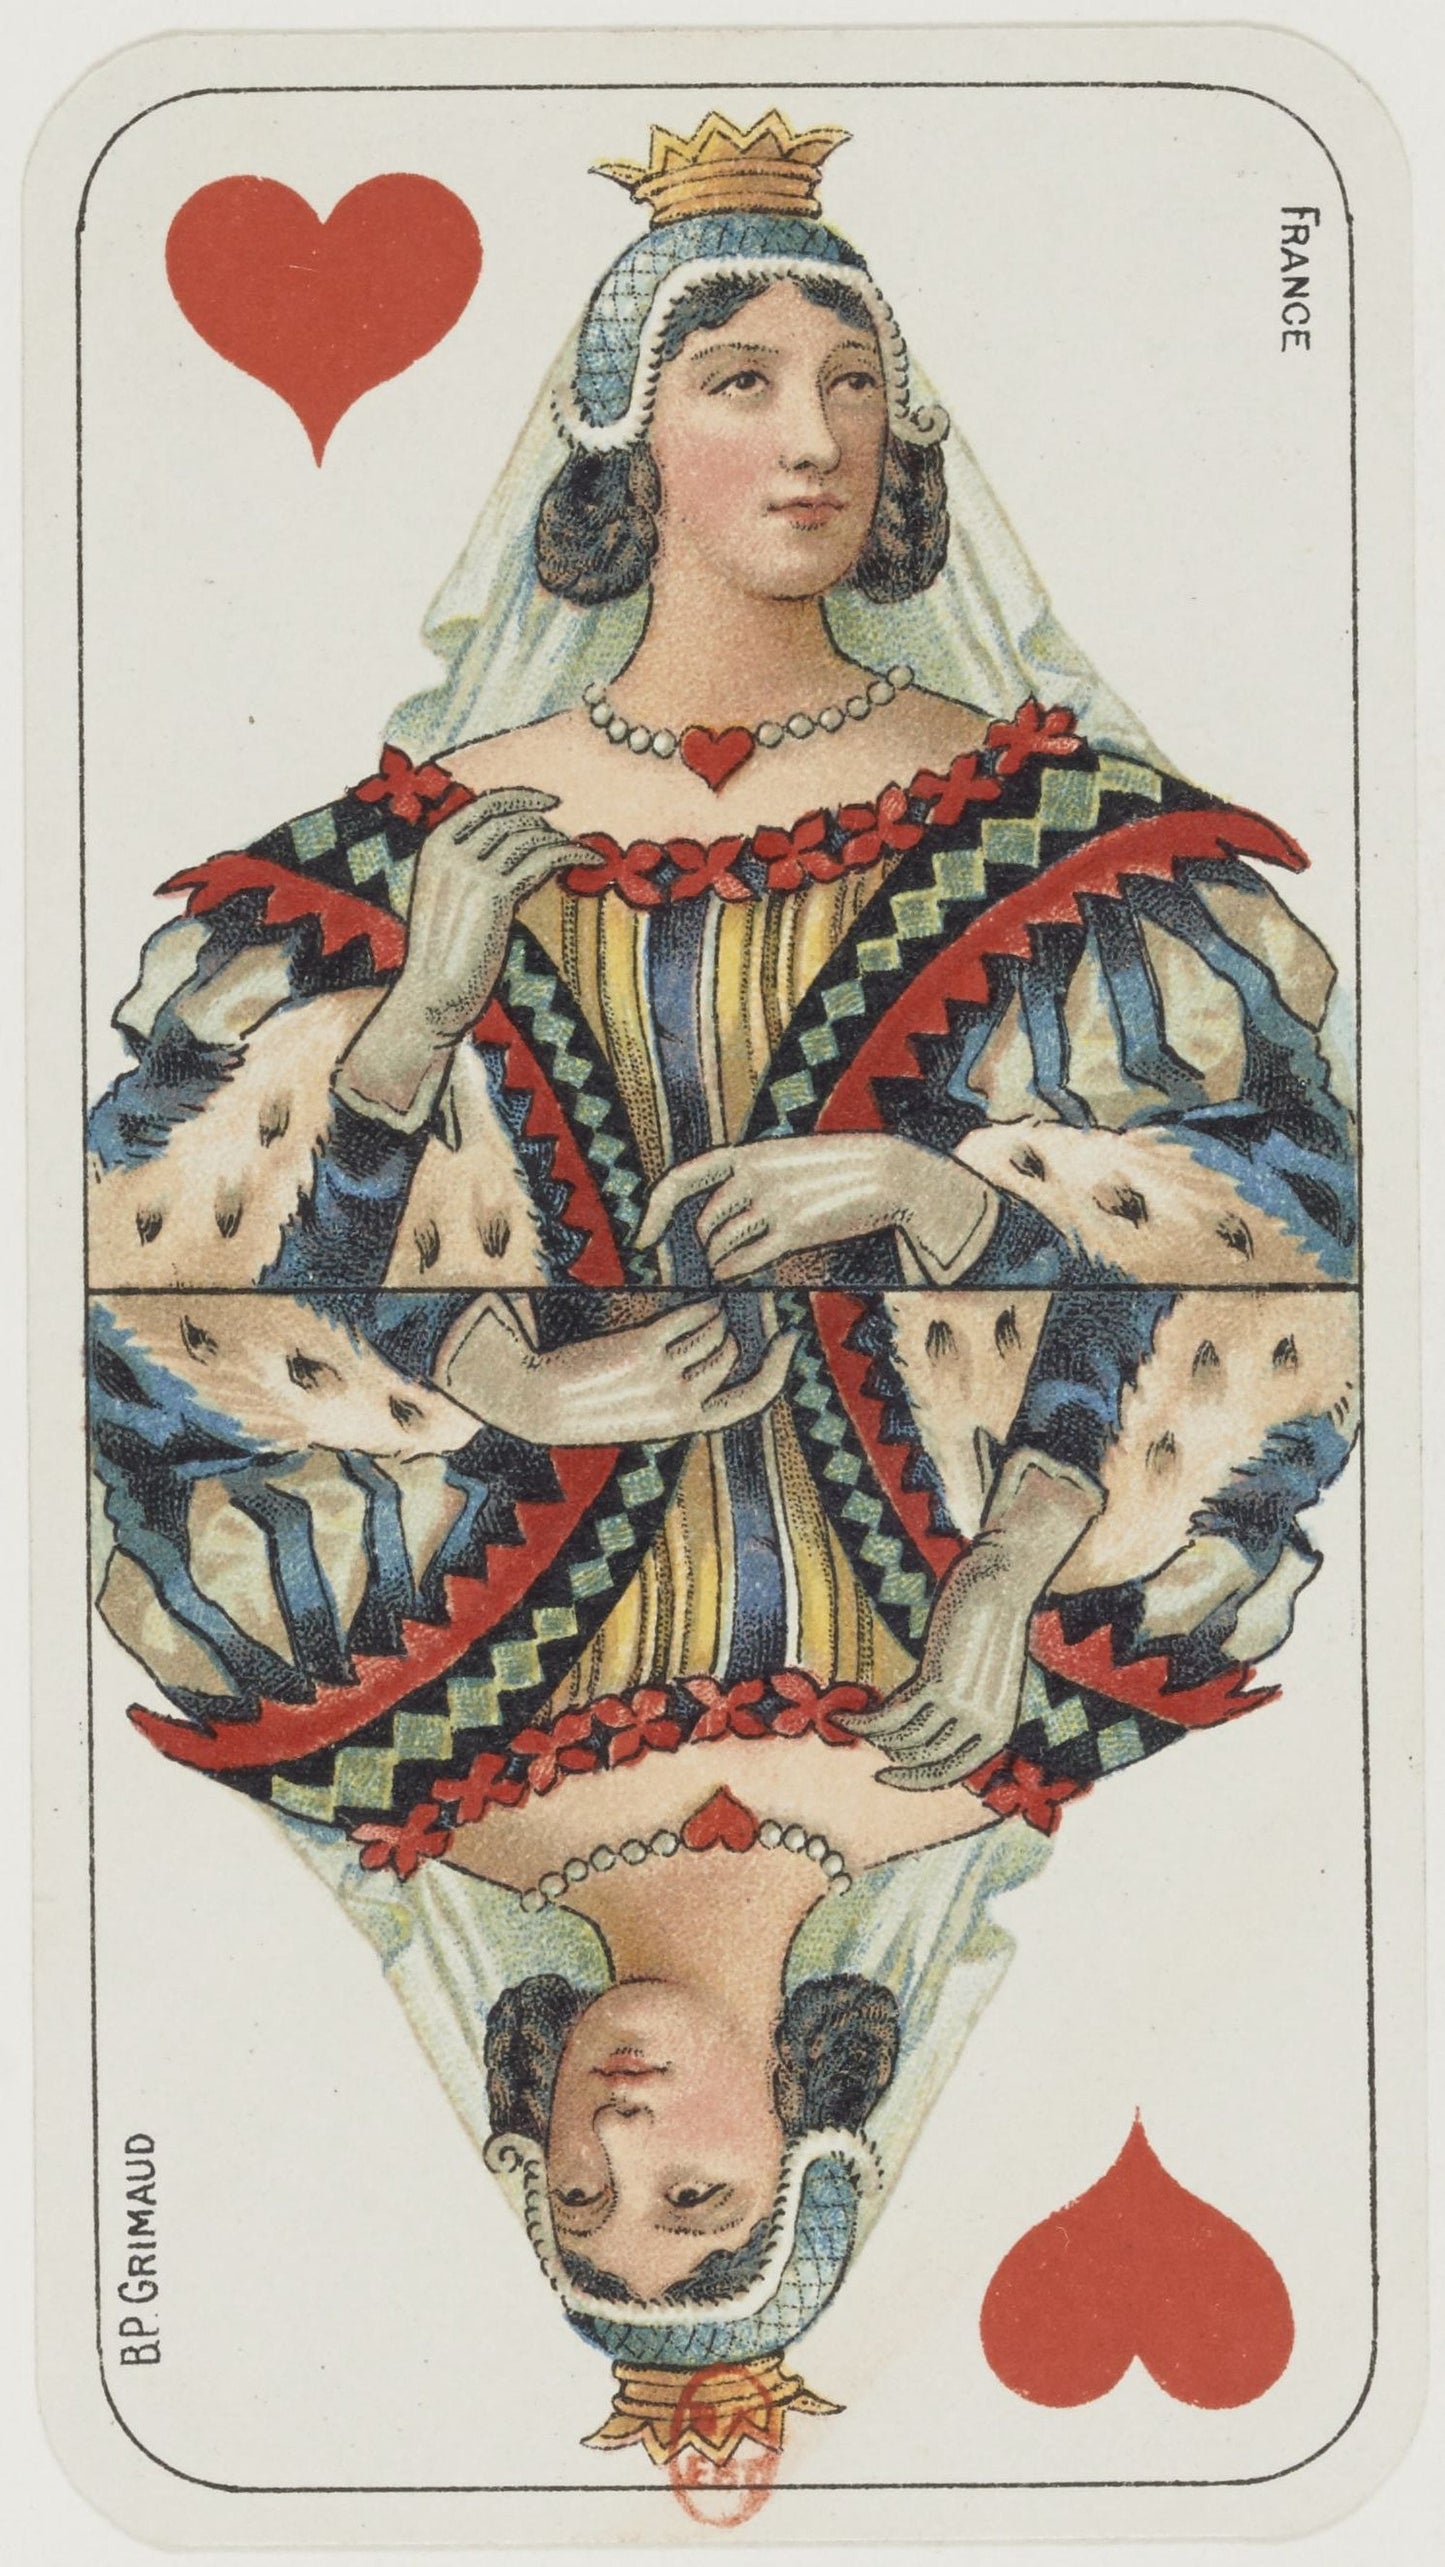 Queen of Hearts Tarot Card (1898) | Man cave bar prints | BP Grimaud Posters, Prints, & Visual Artwork The Trumpet Shop   